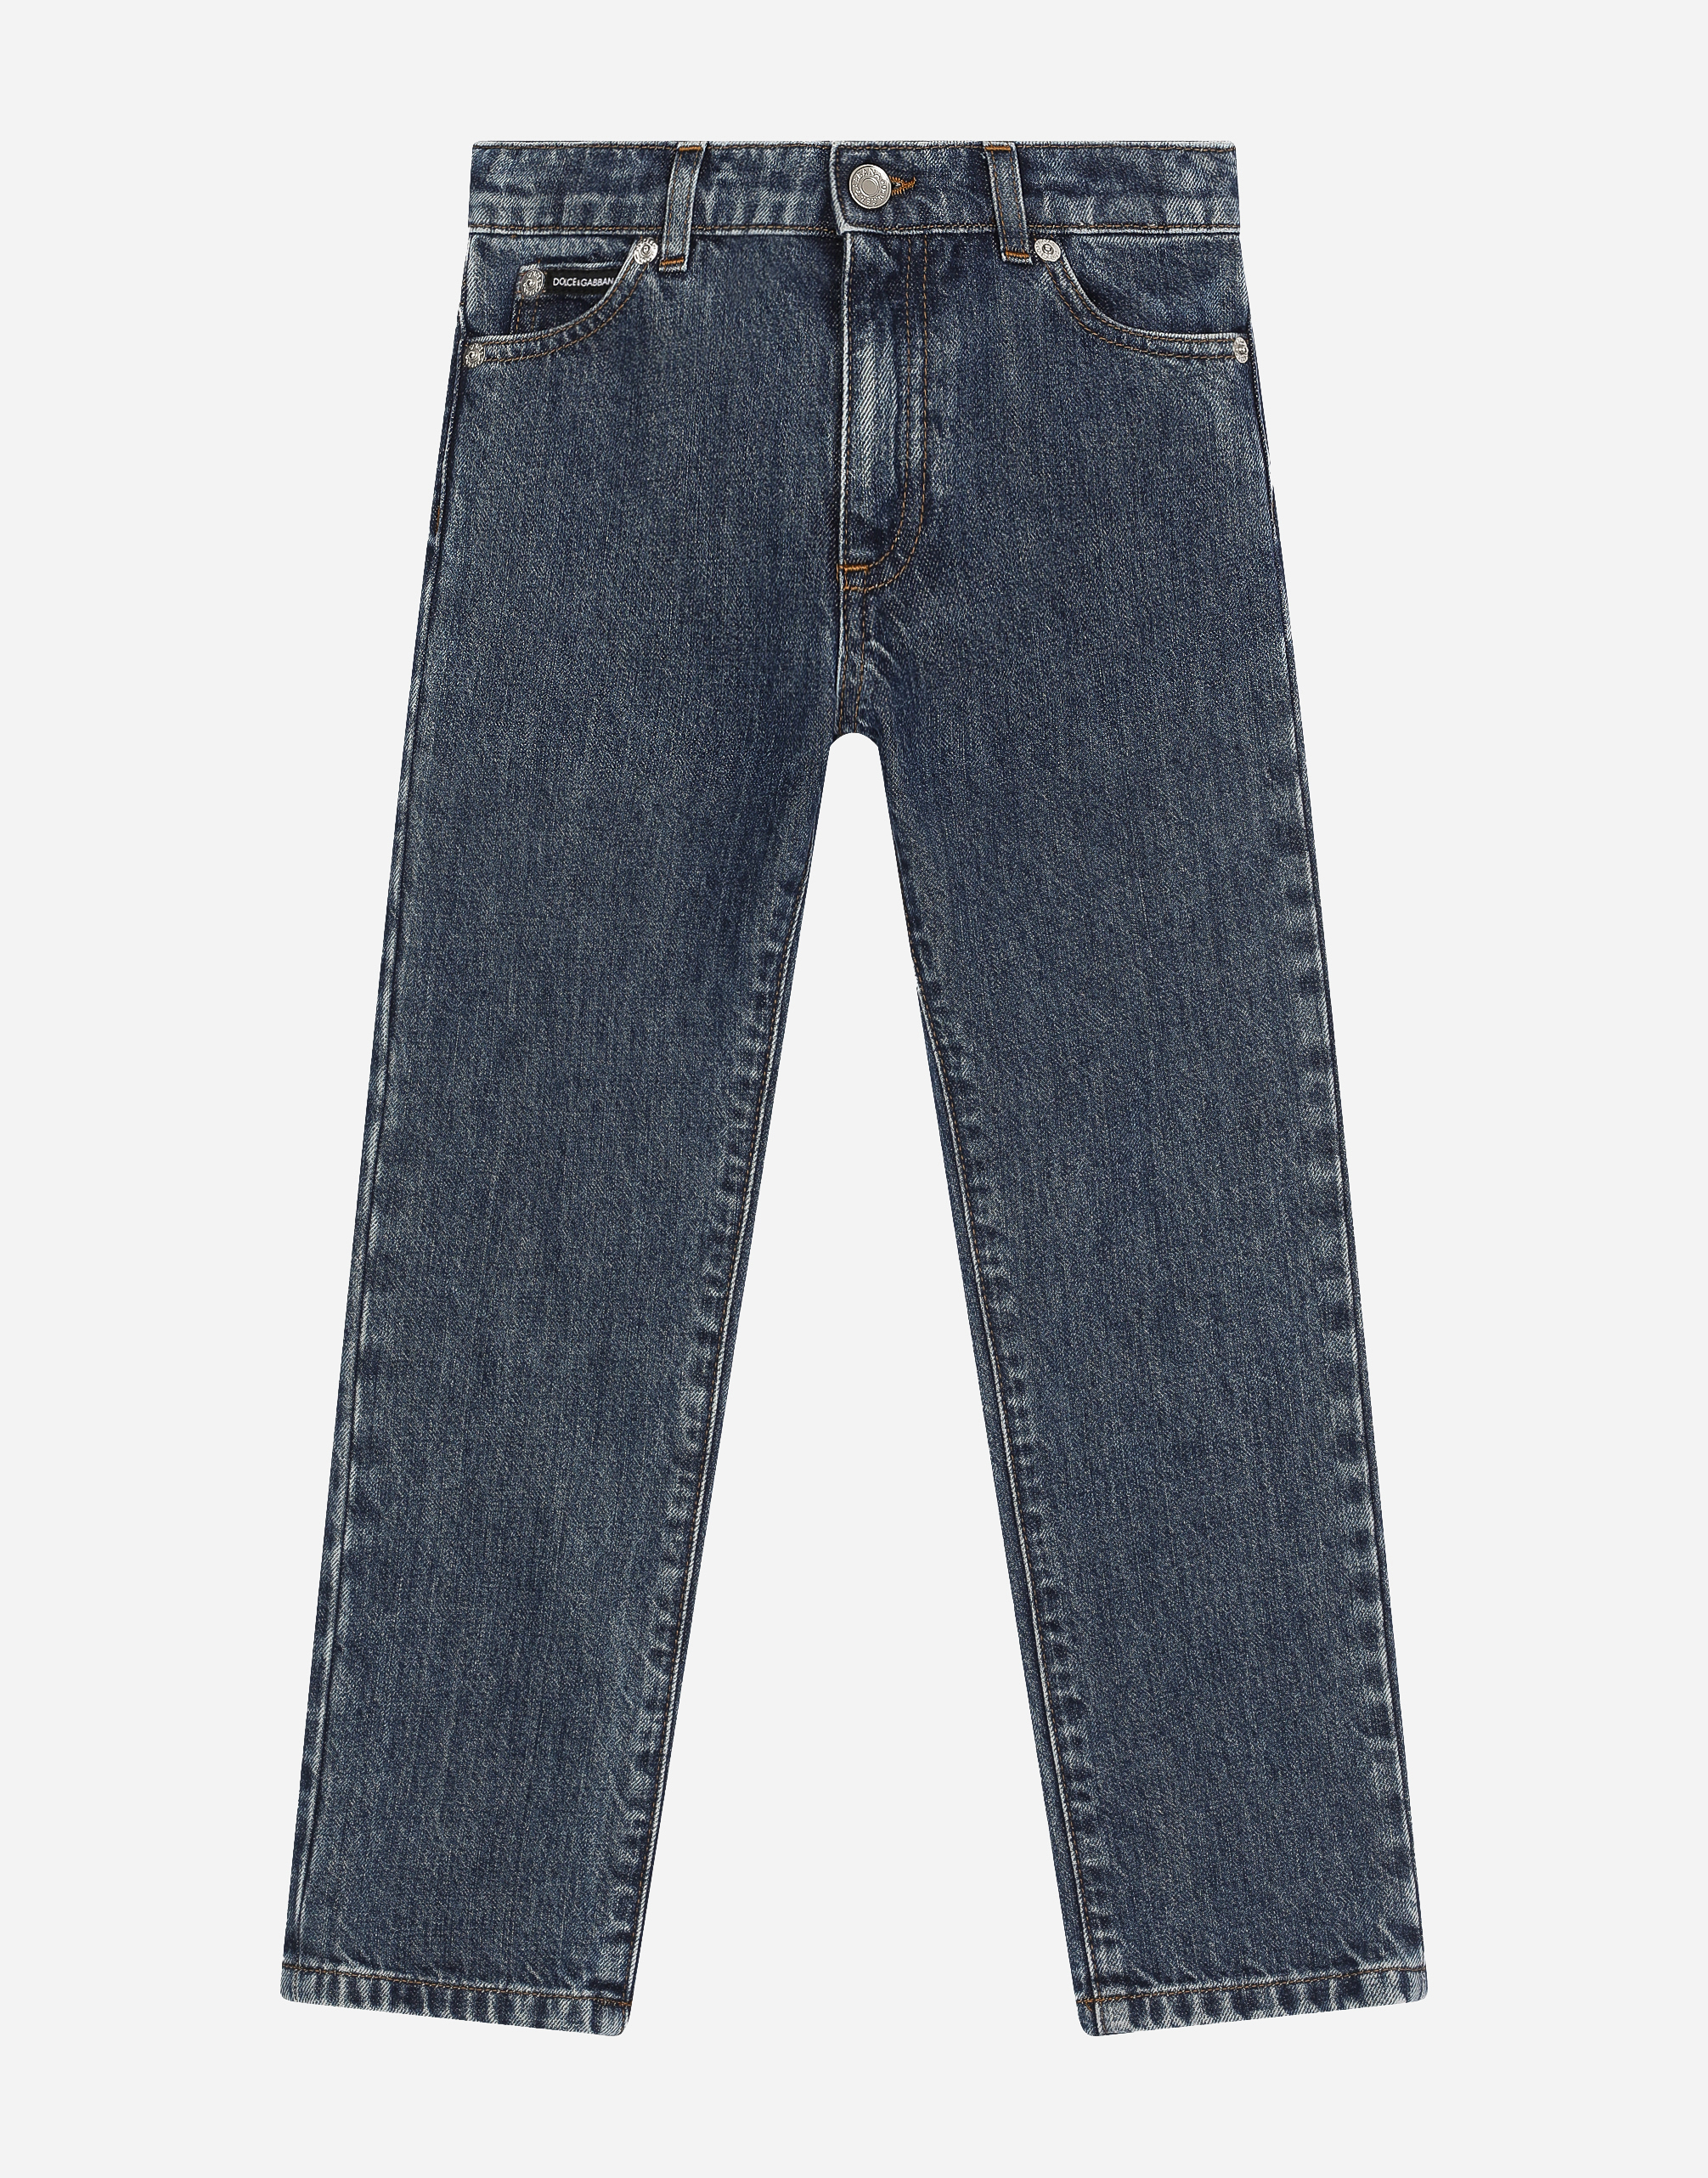 5-pocket denim jeans